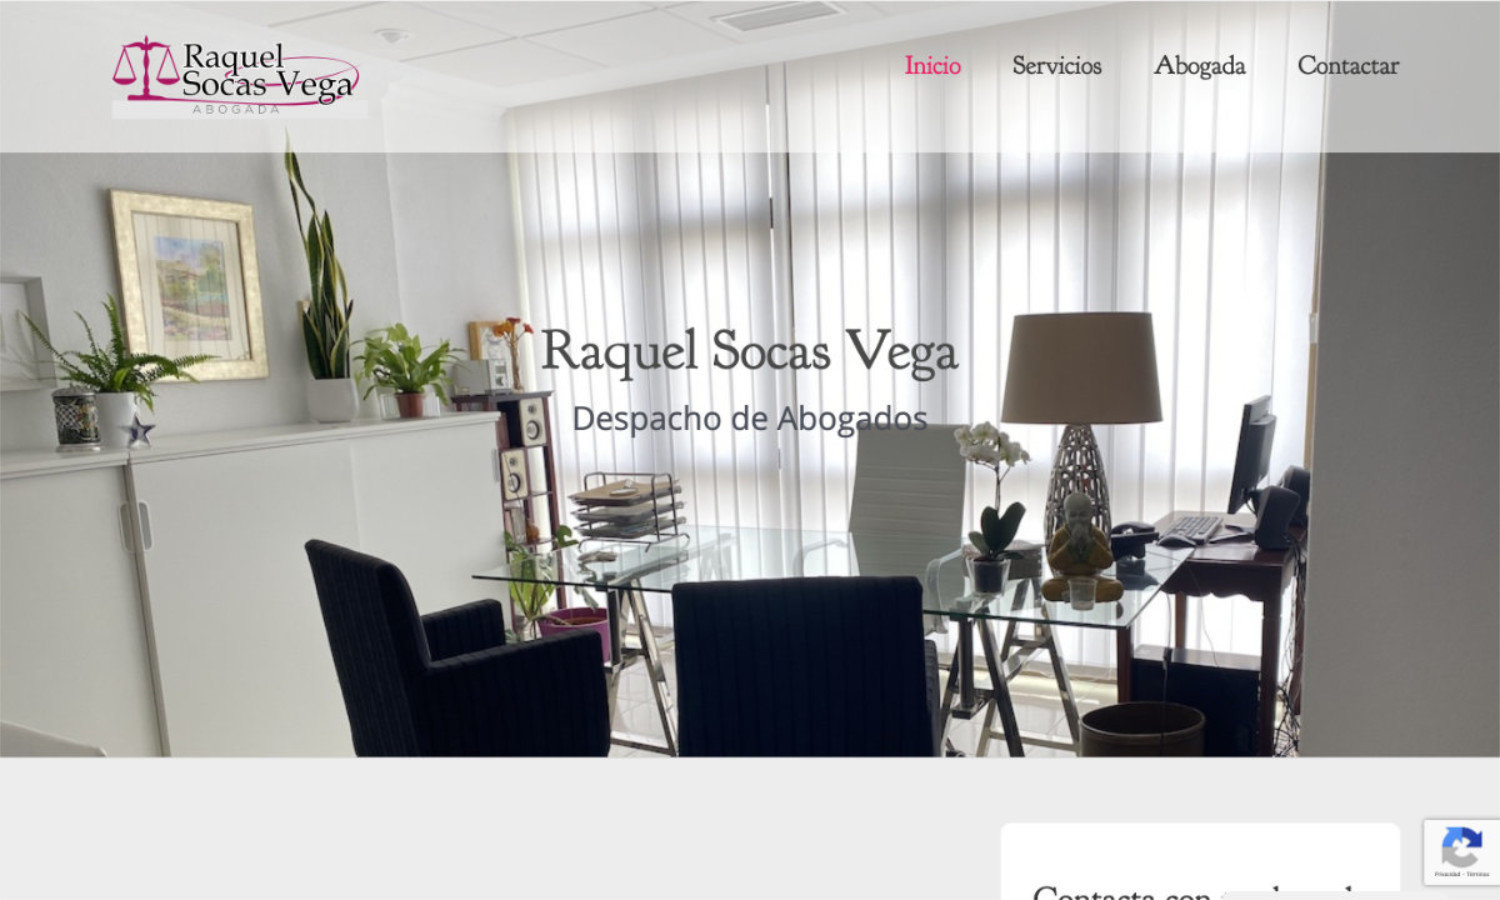 Diseño web de Raquel Socas abogada en Lanzarote